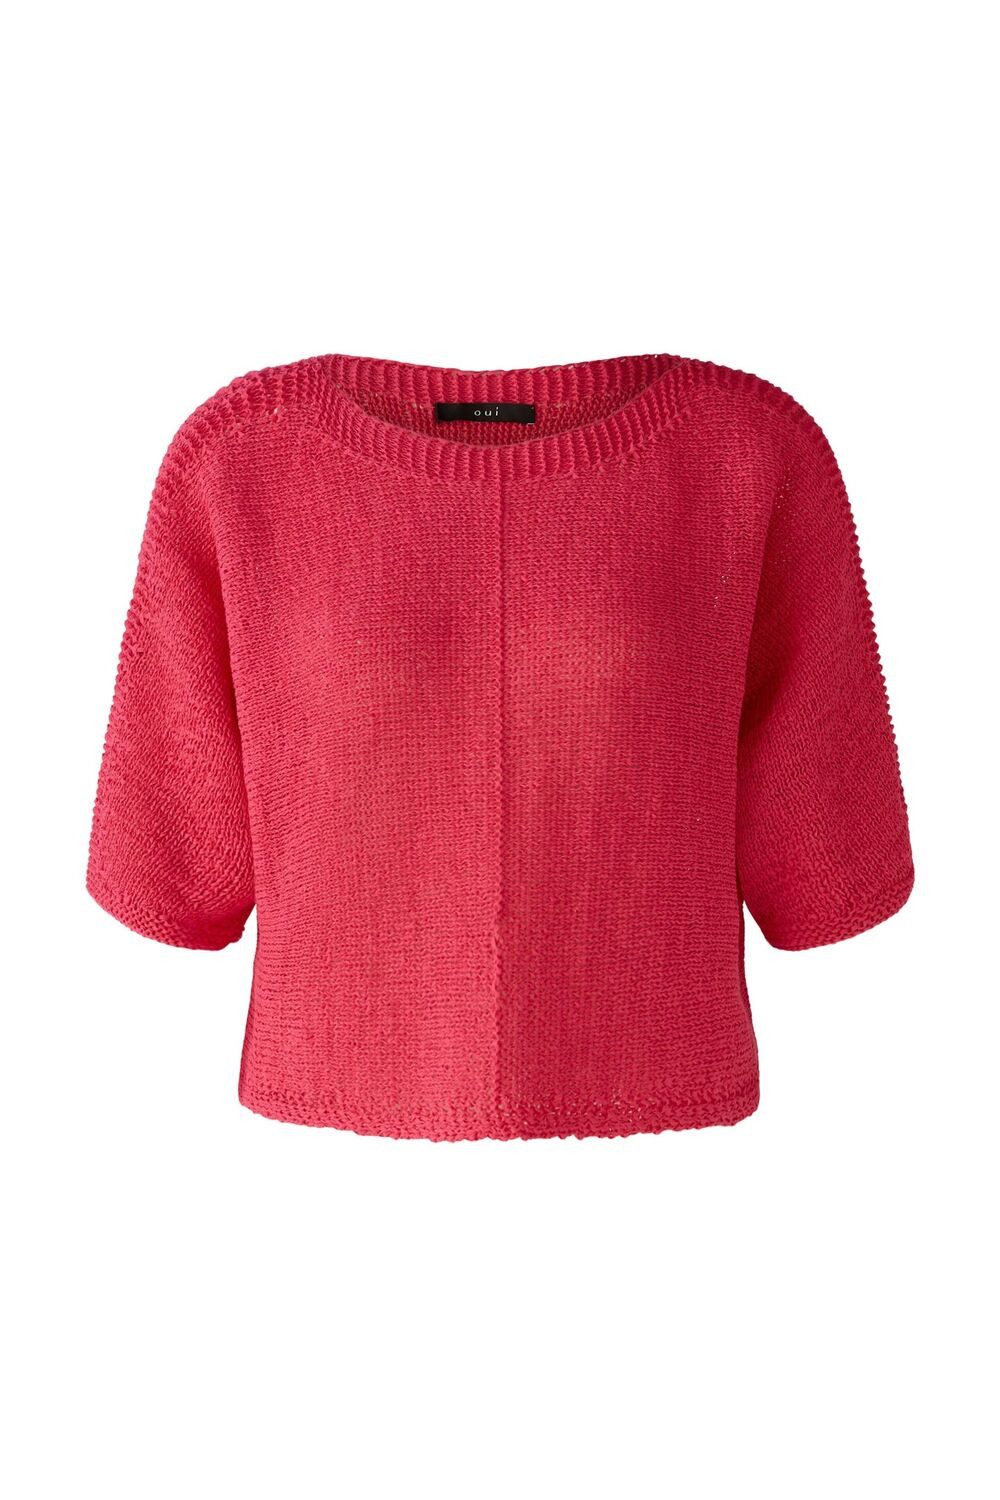 Oui Sweatshirt Пуловери, pink